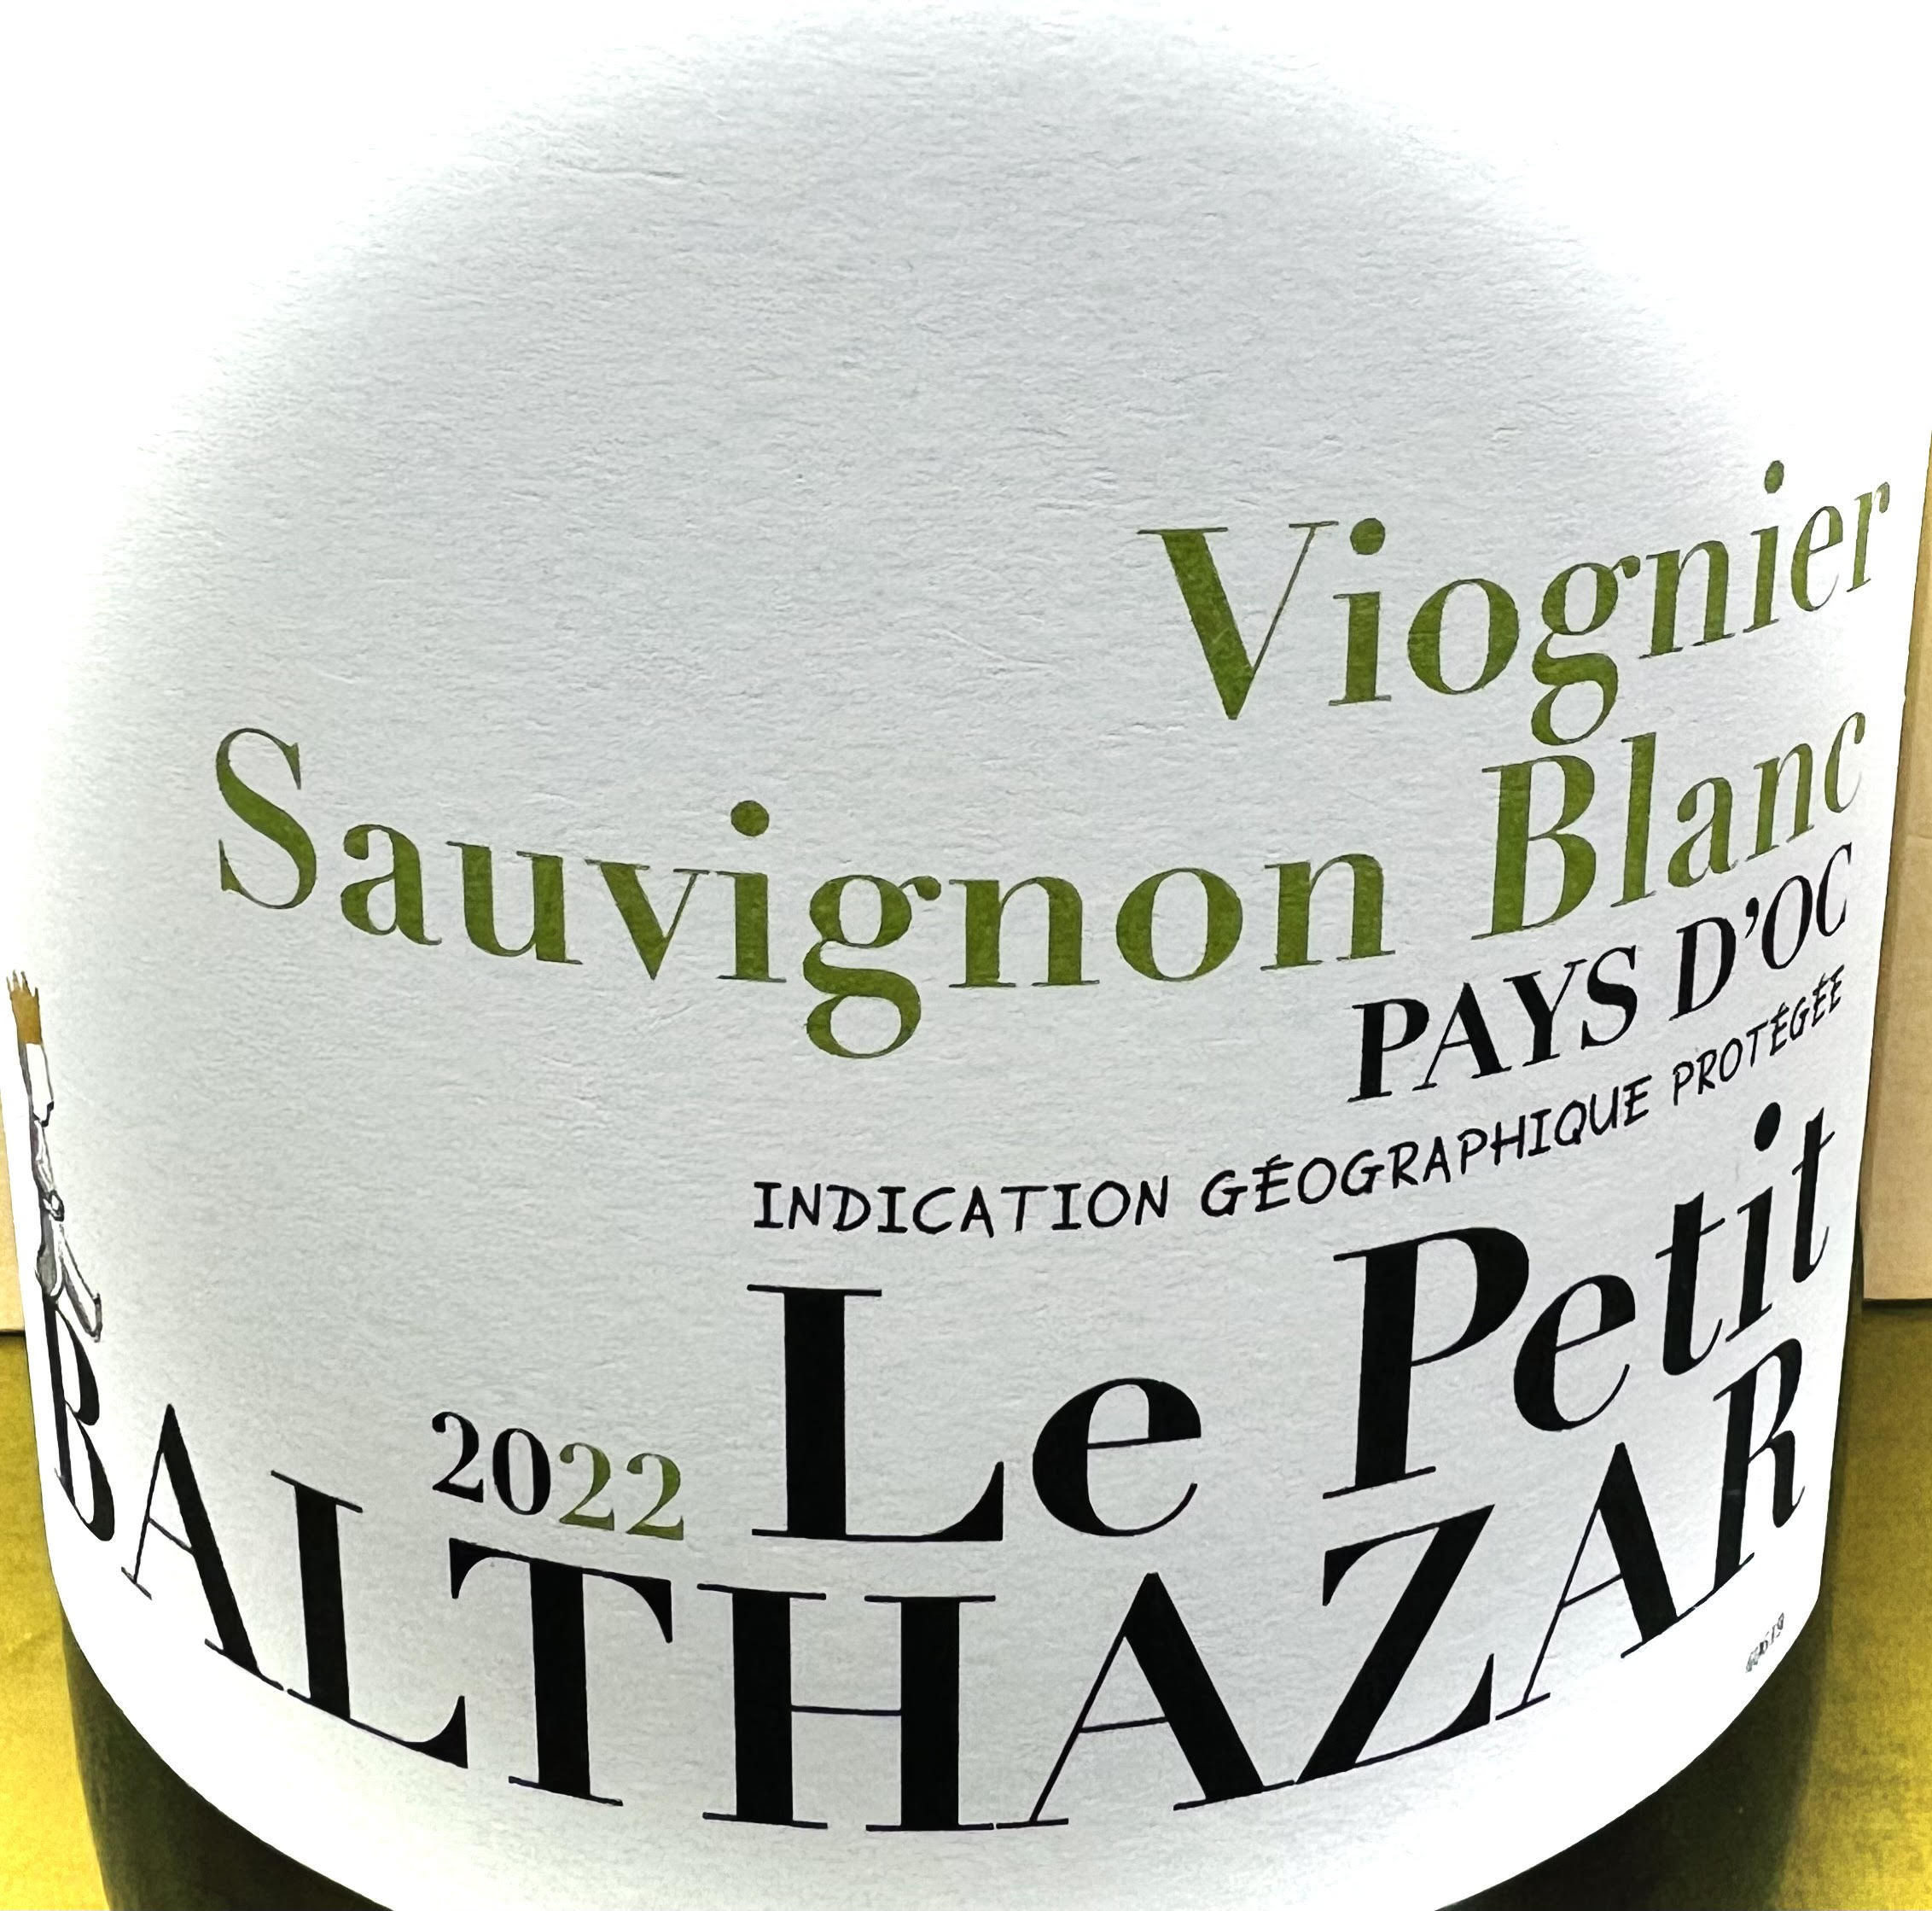 Le Petit Balthazar Sauvignon Blanc/Viognier pays d'oc 2023